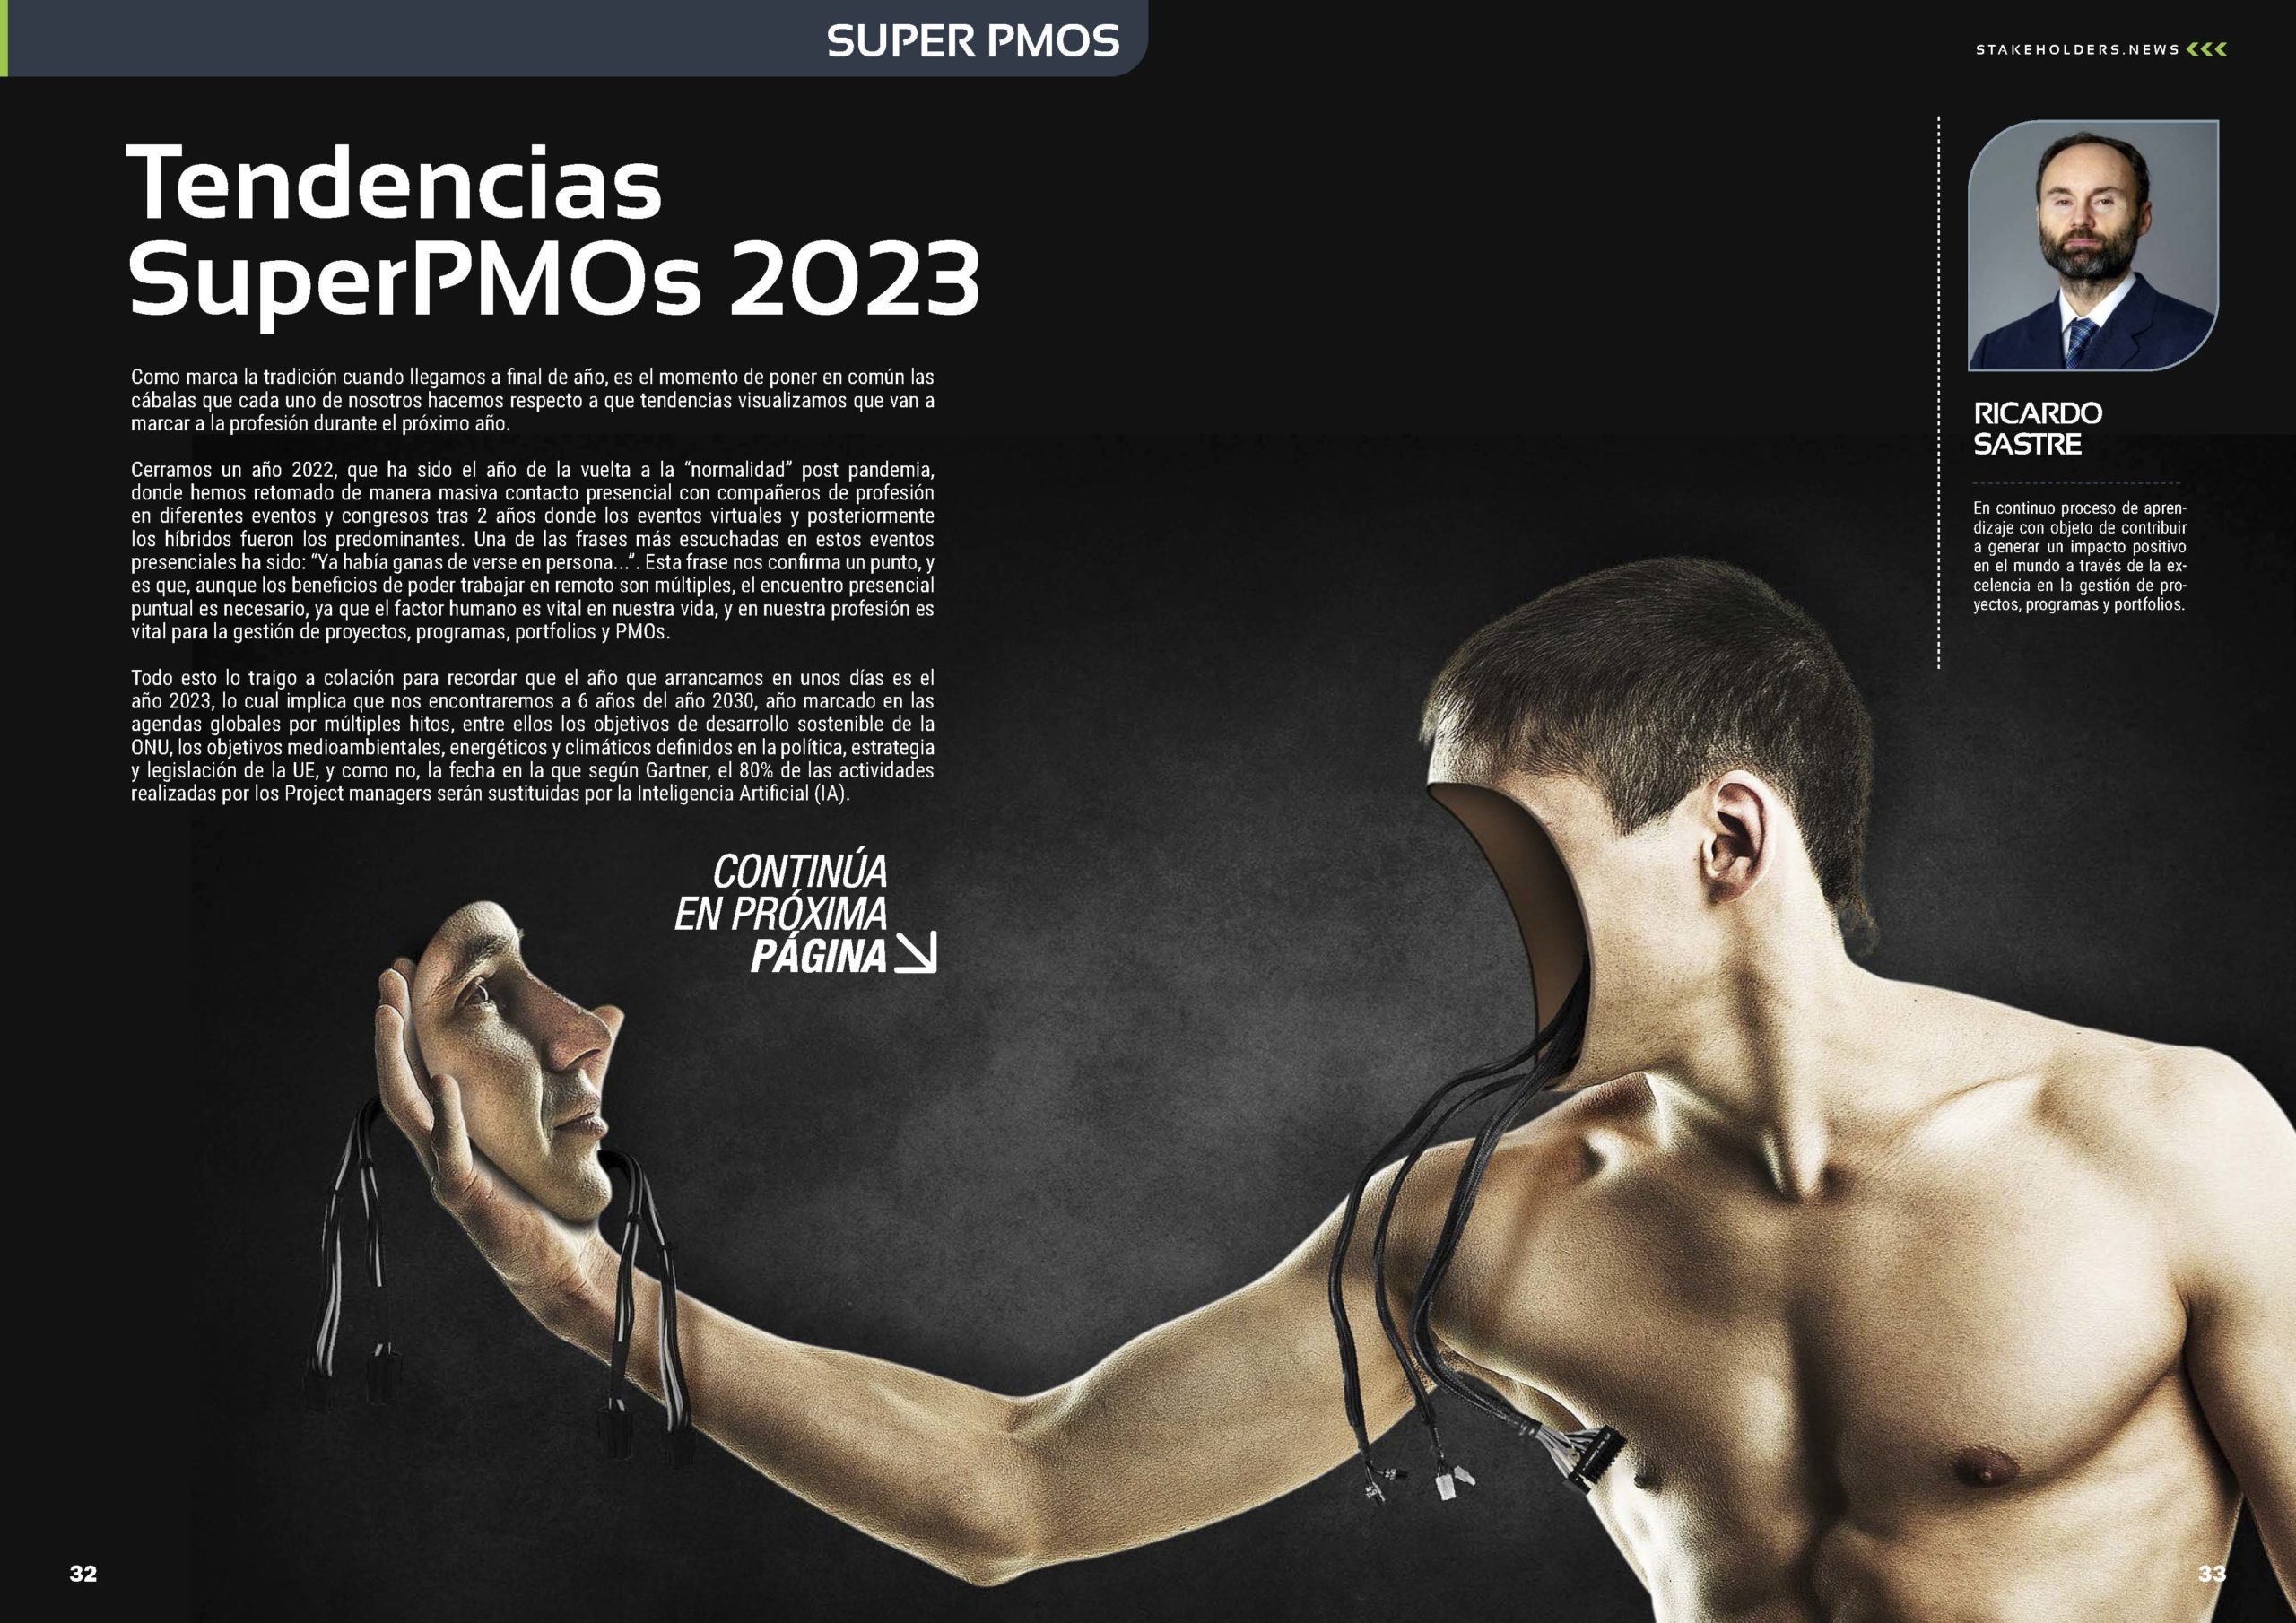 Artículo "Tendencias SuperPMOs 2023" de Ricardo Sastre en la Revista Stakeholders.news